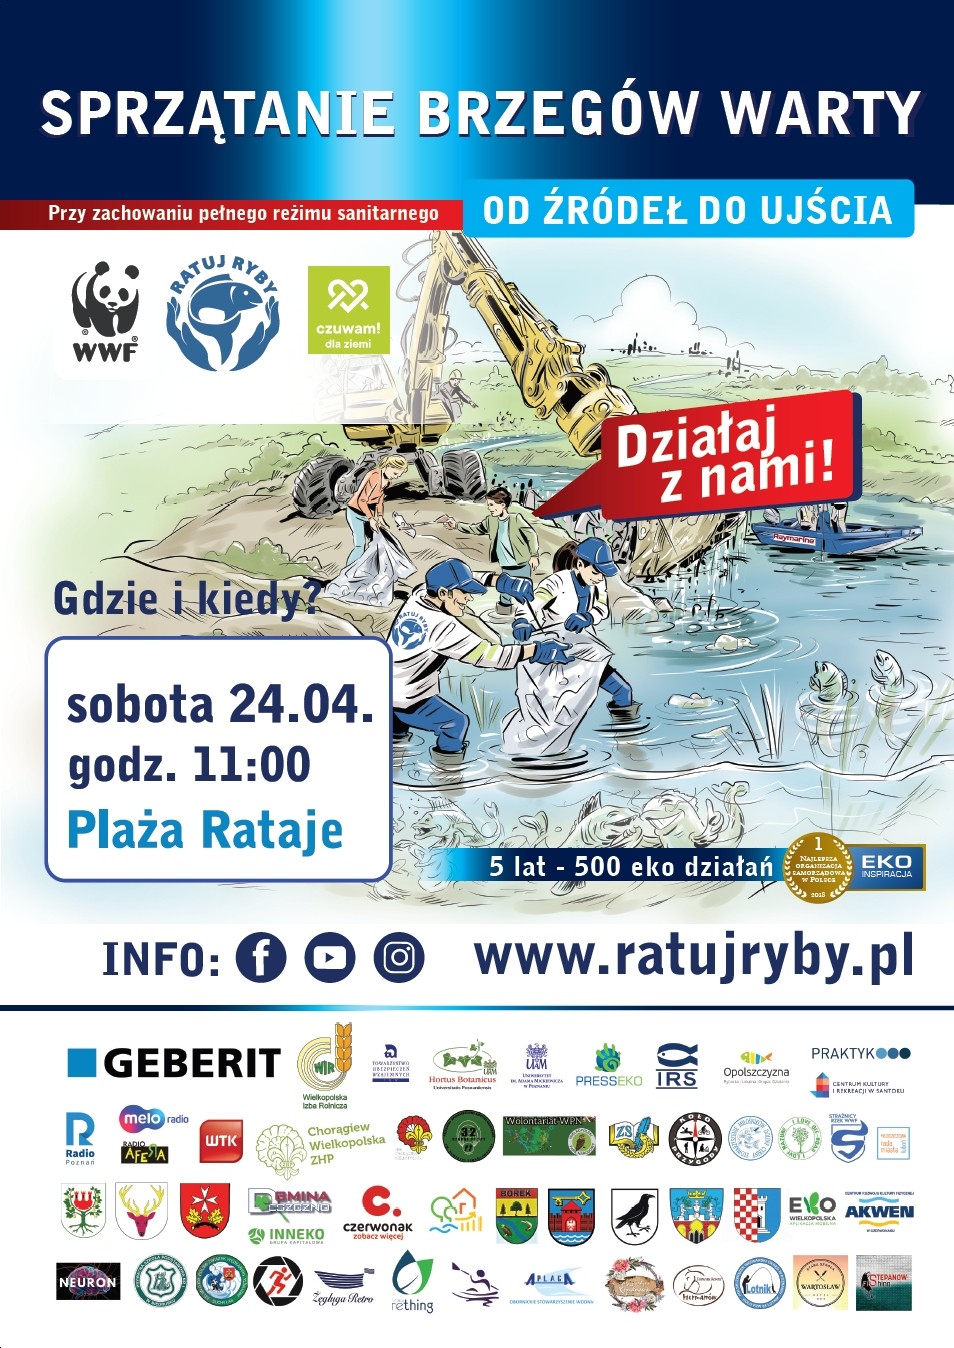 Plakat przedstawia informacje związane z akcją sprzątania brzegów rzeki Warty.